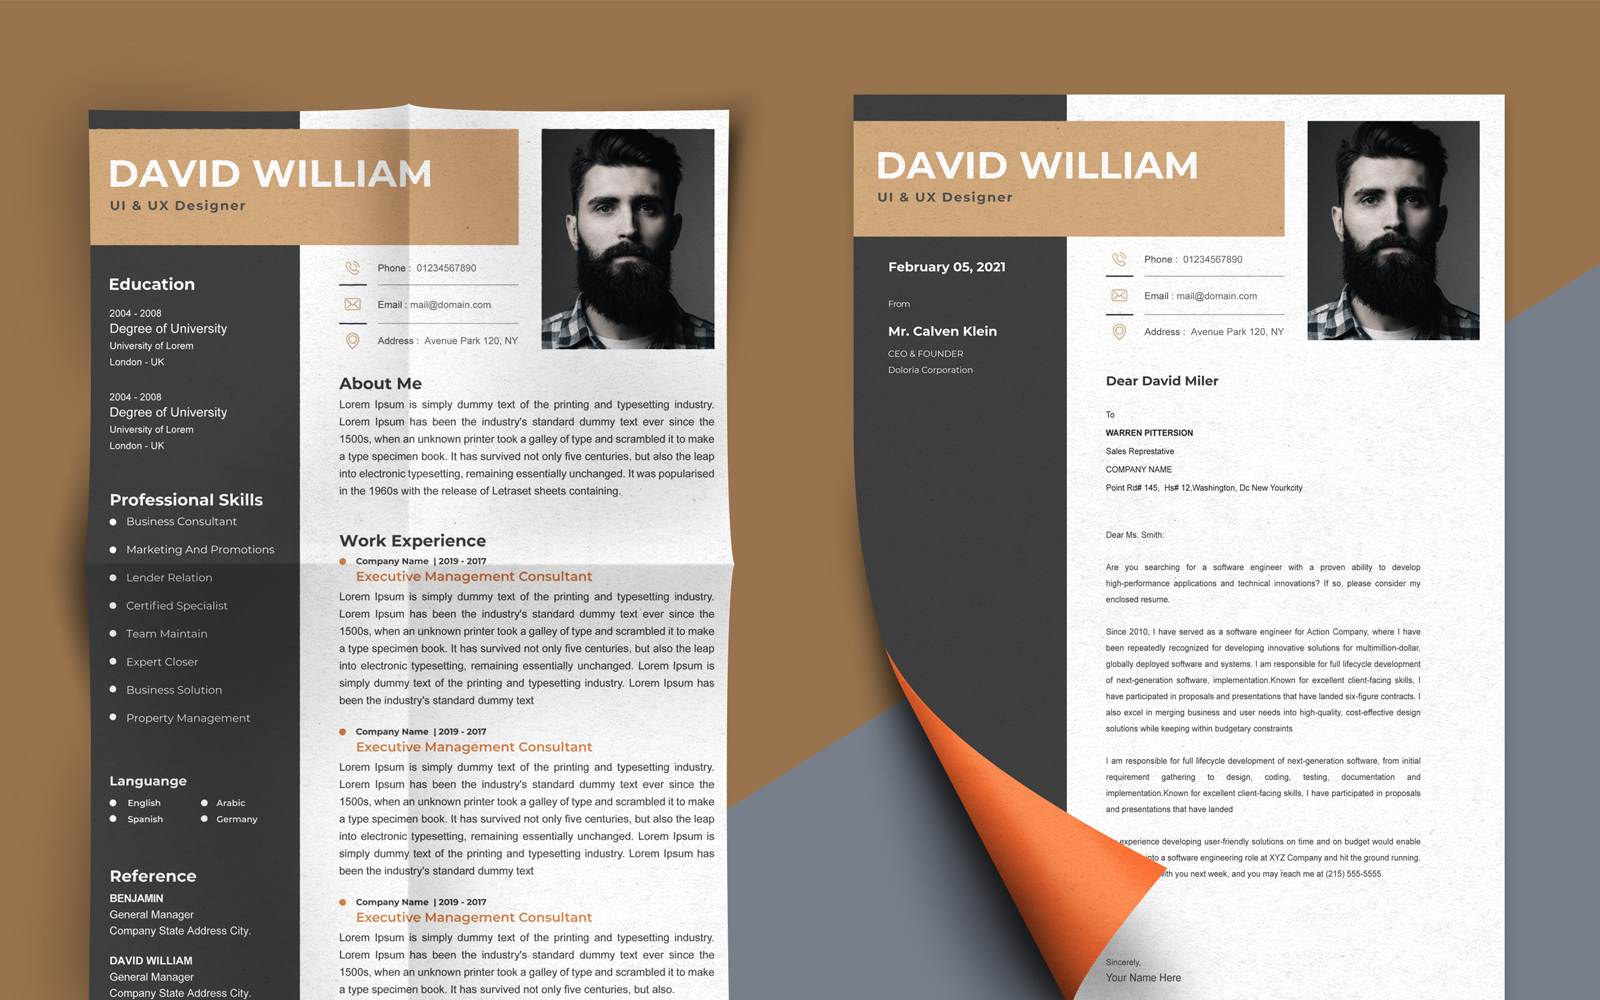 David William - UI & UX Designer Printable Resume Templates